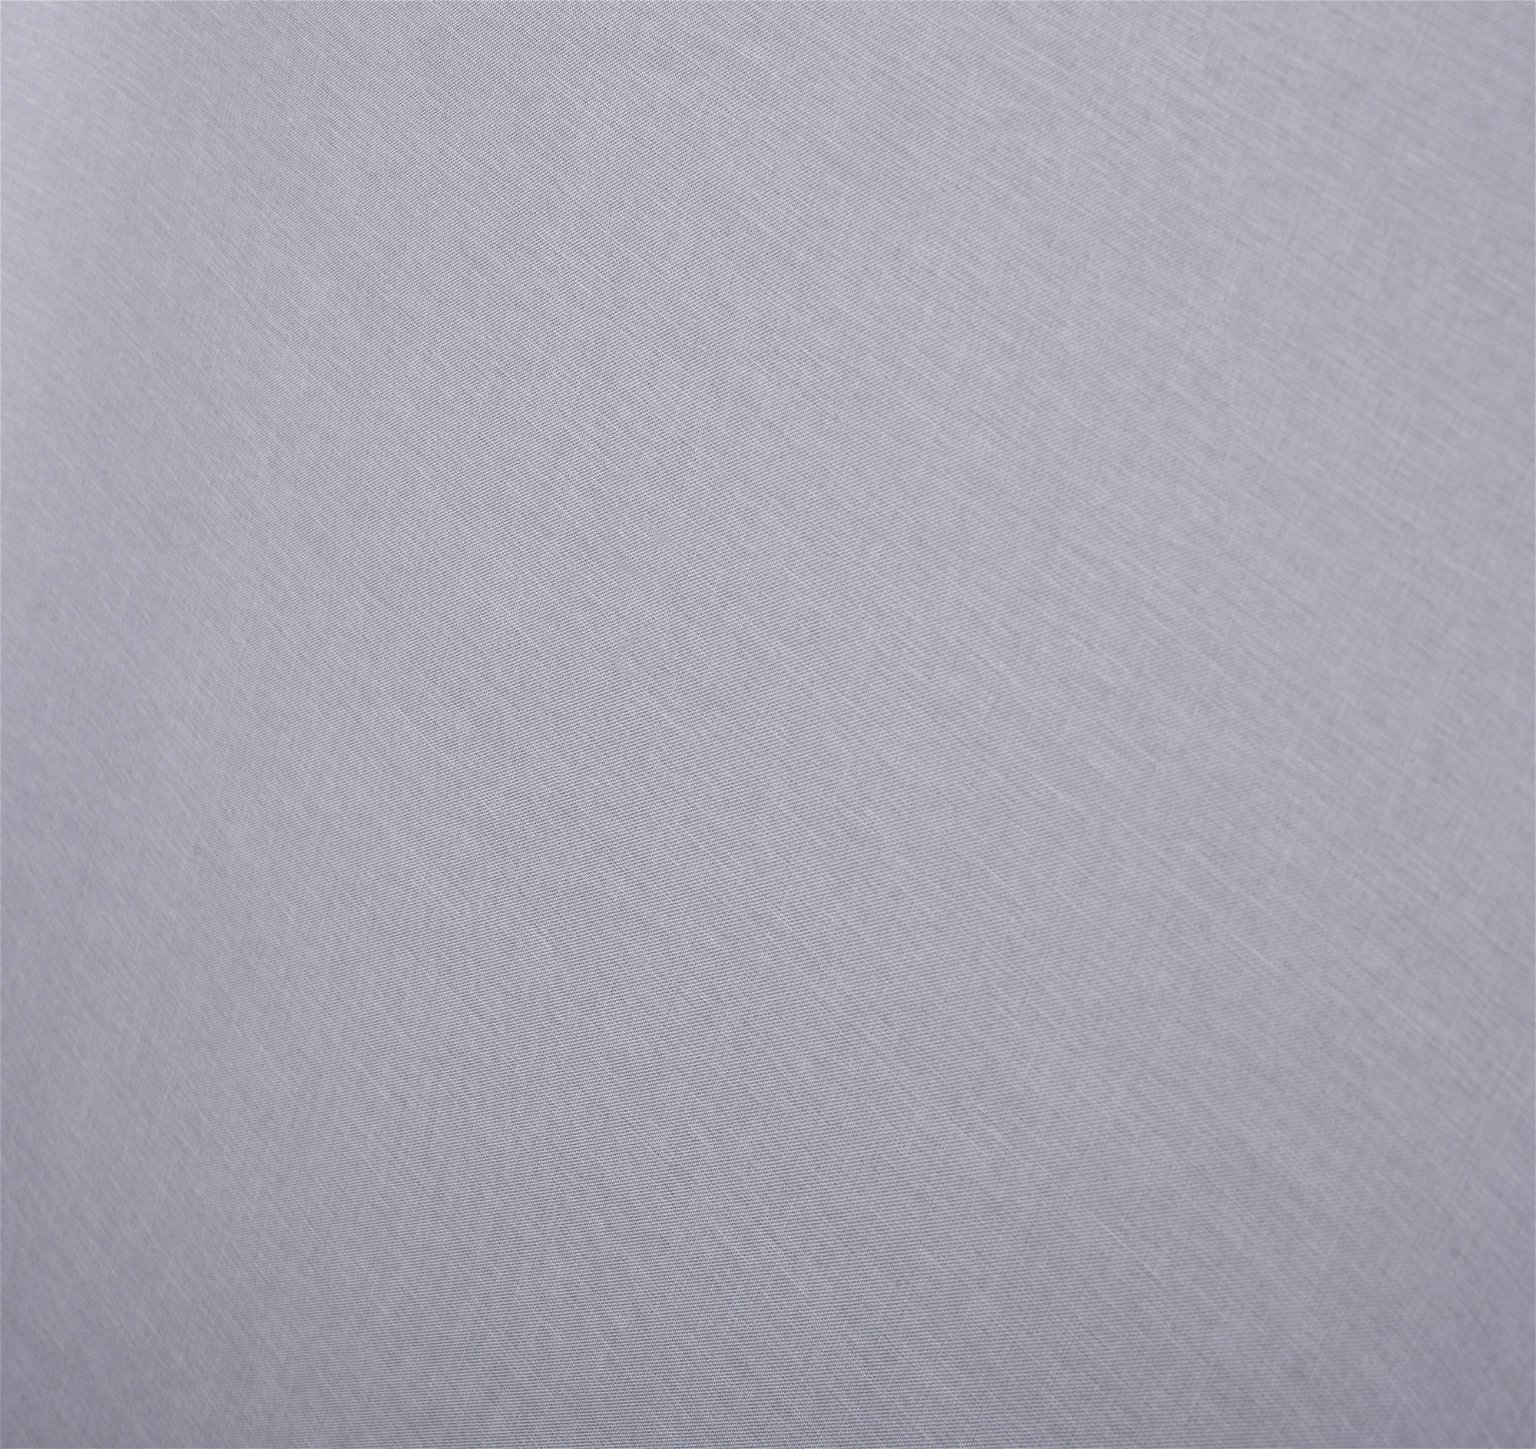 Klasikinė ritininė užuolaida MILAN, šv. pilkos sp., 140 x 170 cm, 100 % poliesteris - 4